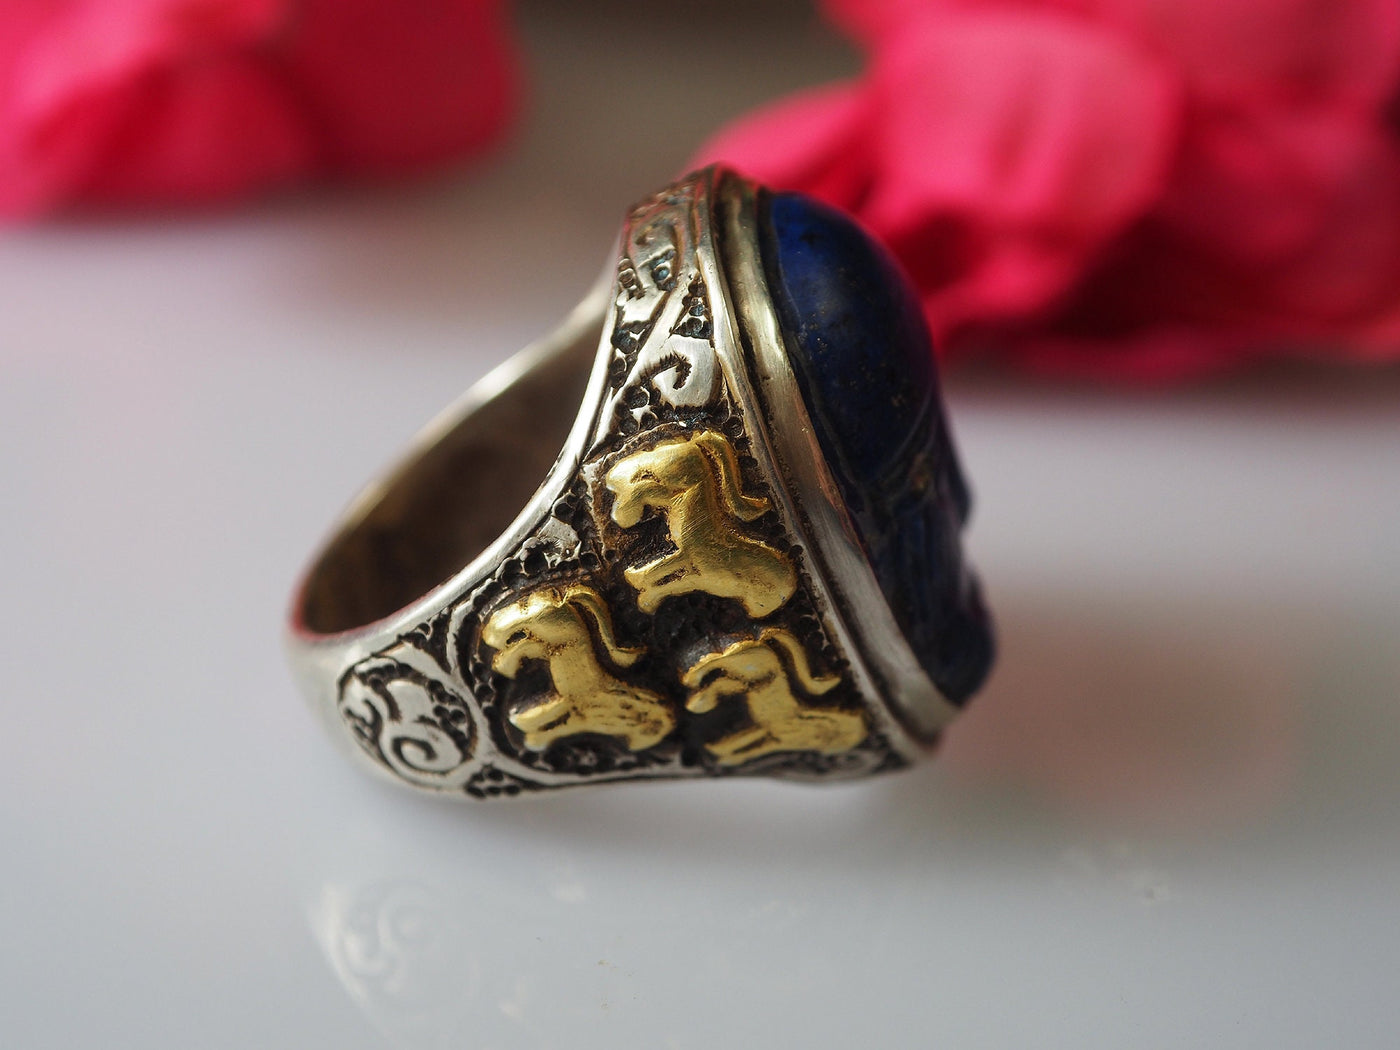 einzigartige orient Turkmen massiv silber Lapis Lazuli Siegelring teil vergoldet aus Afghanistan seal ring No:469 Ring Orientsbazar   